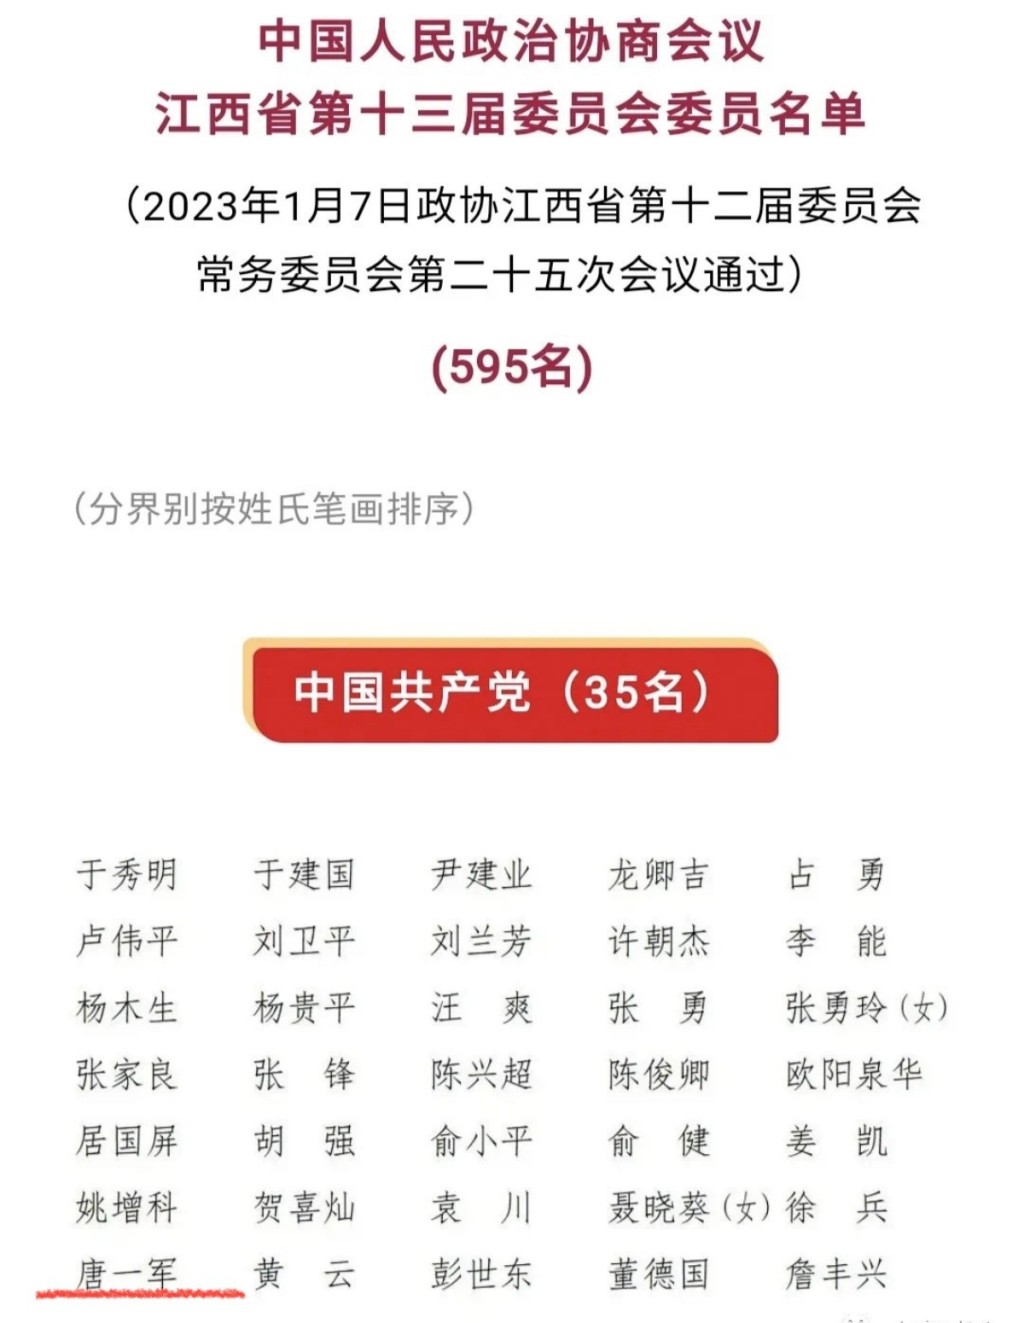 唐一軍名字出現在新一屆江西省政協委員名單上。